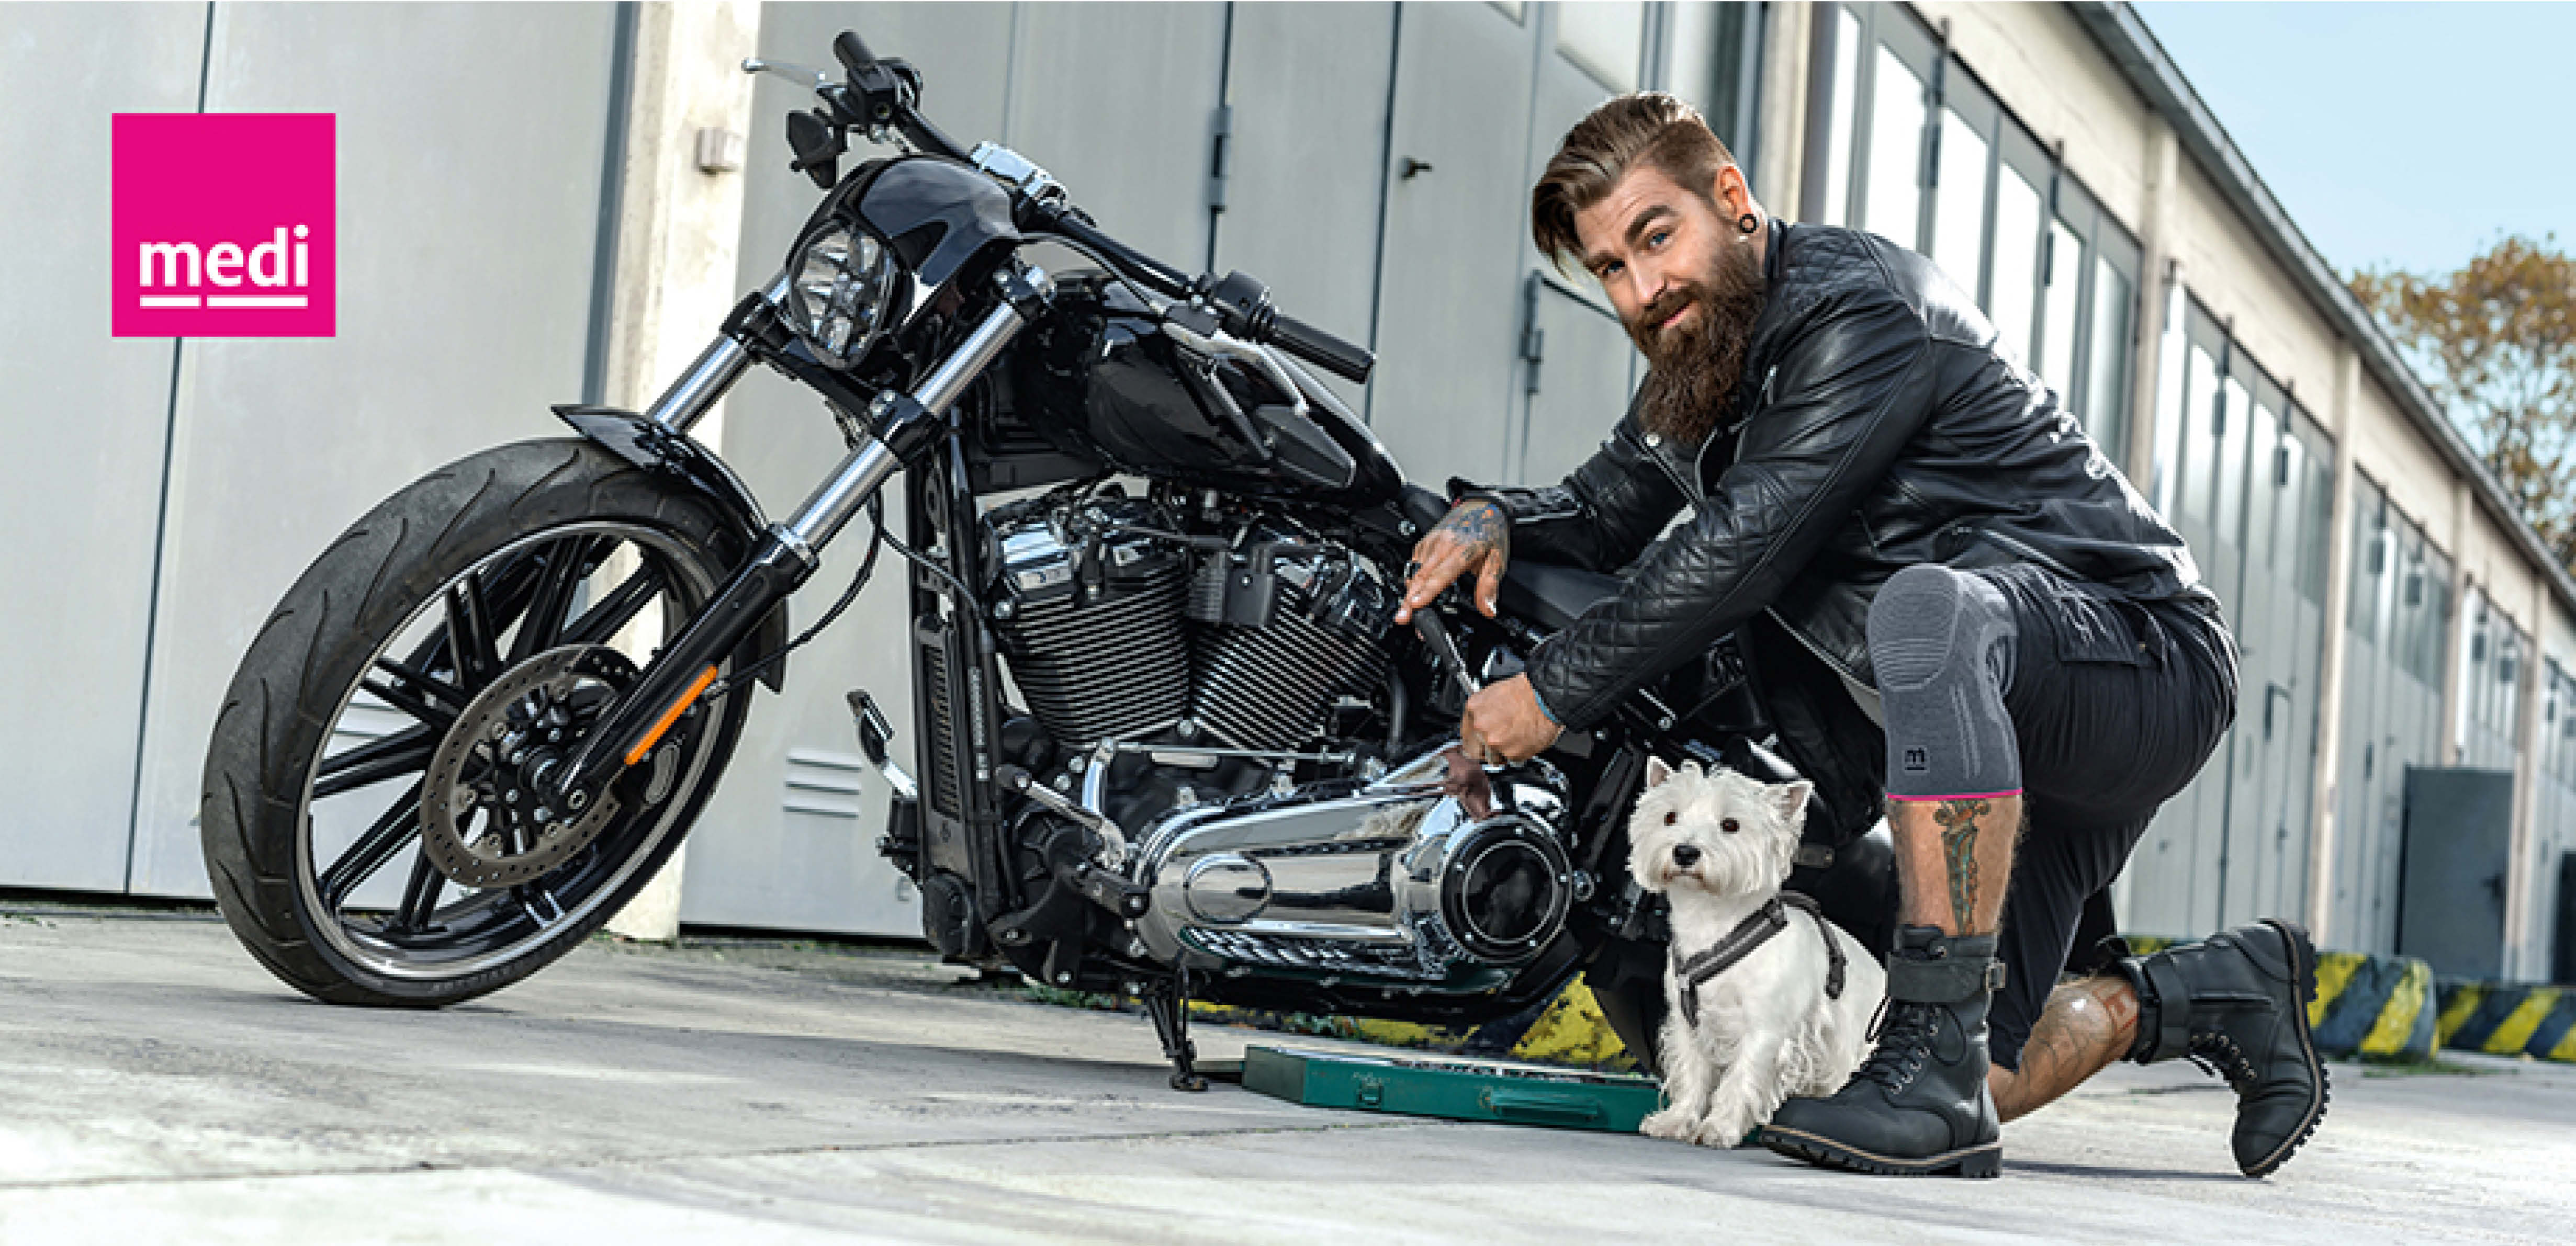 kuul fyr med motorsykkel og hund og støttebandsje på kne